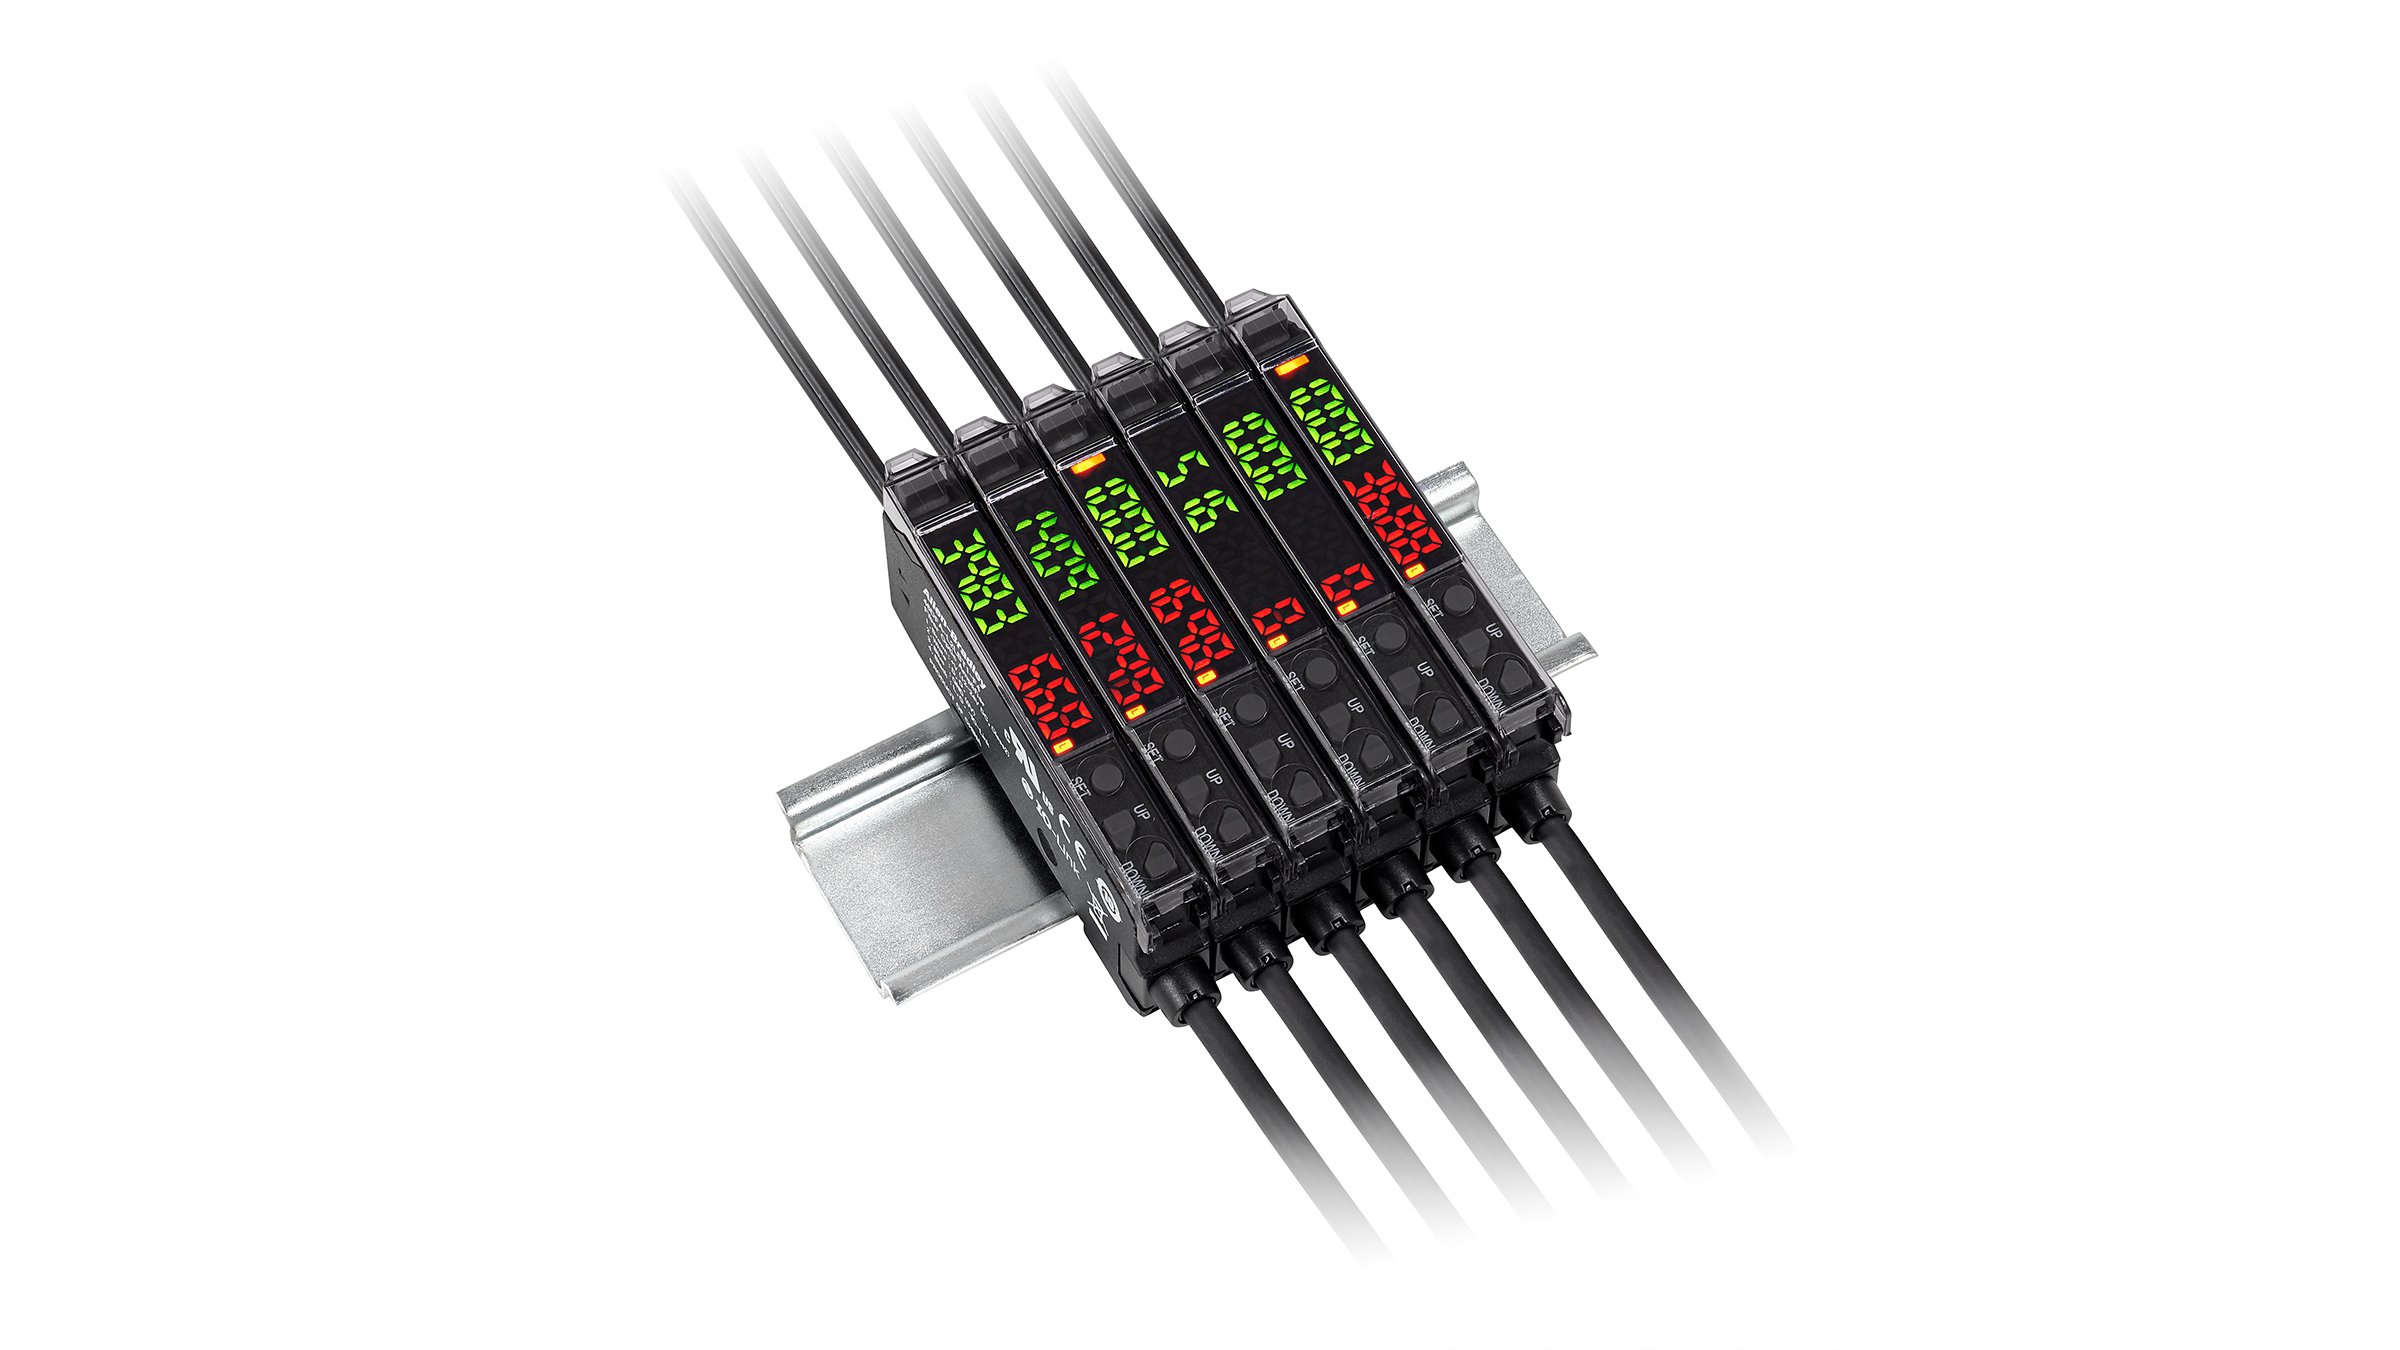 6 个相邻的黑色矩形纤薄传感器（绿色和红色指示灯齐平，两端具有电缆）安装在 DIN 导轨上